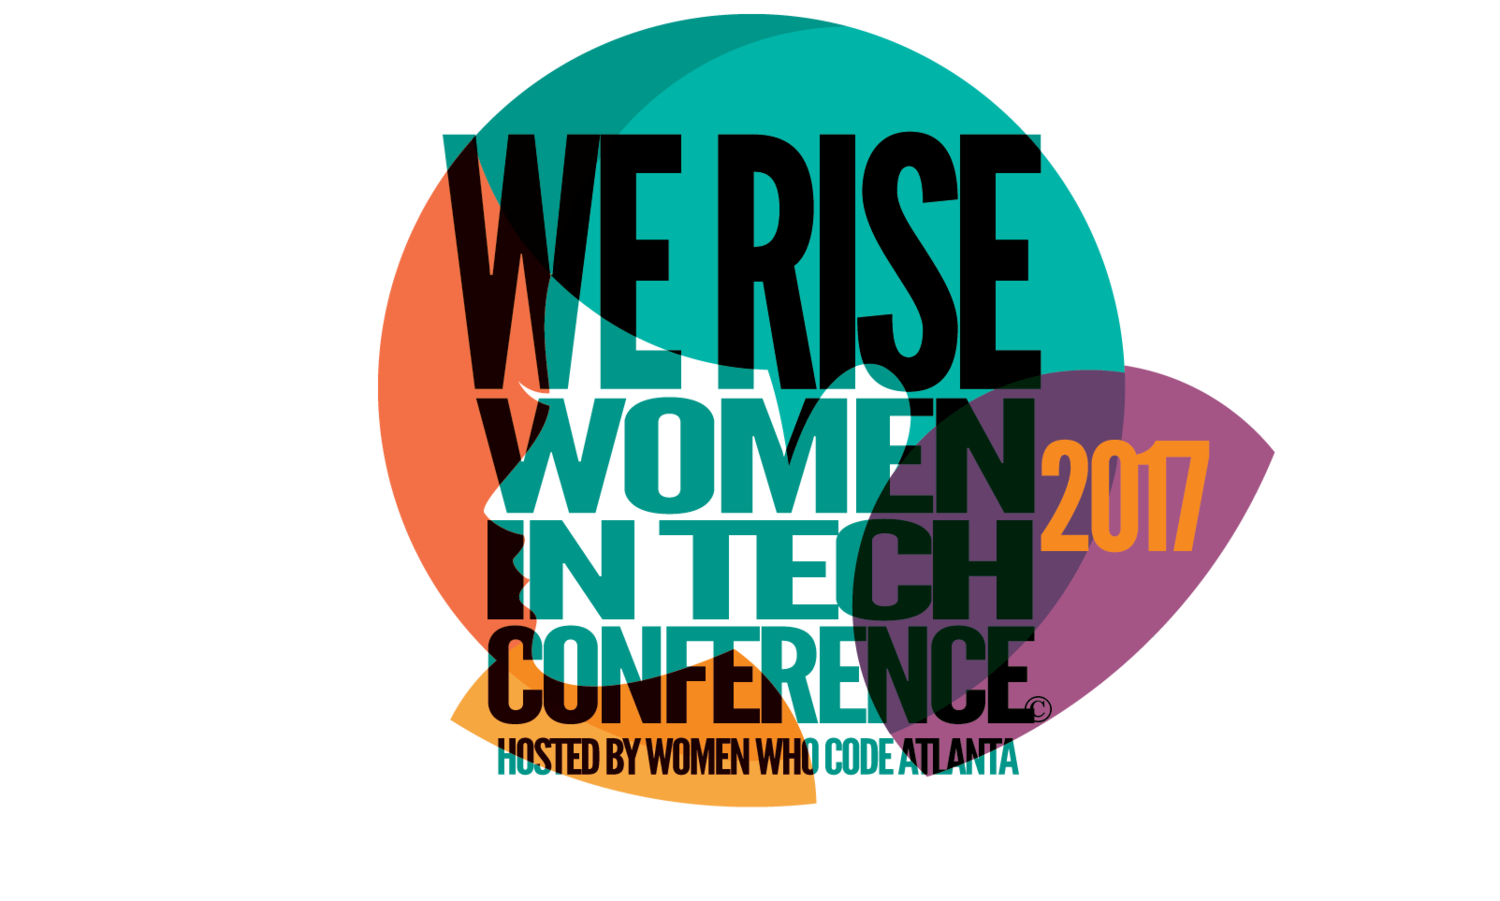 We RISE Women in Tech Conference SpeakerHub